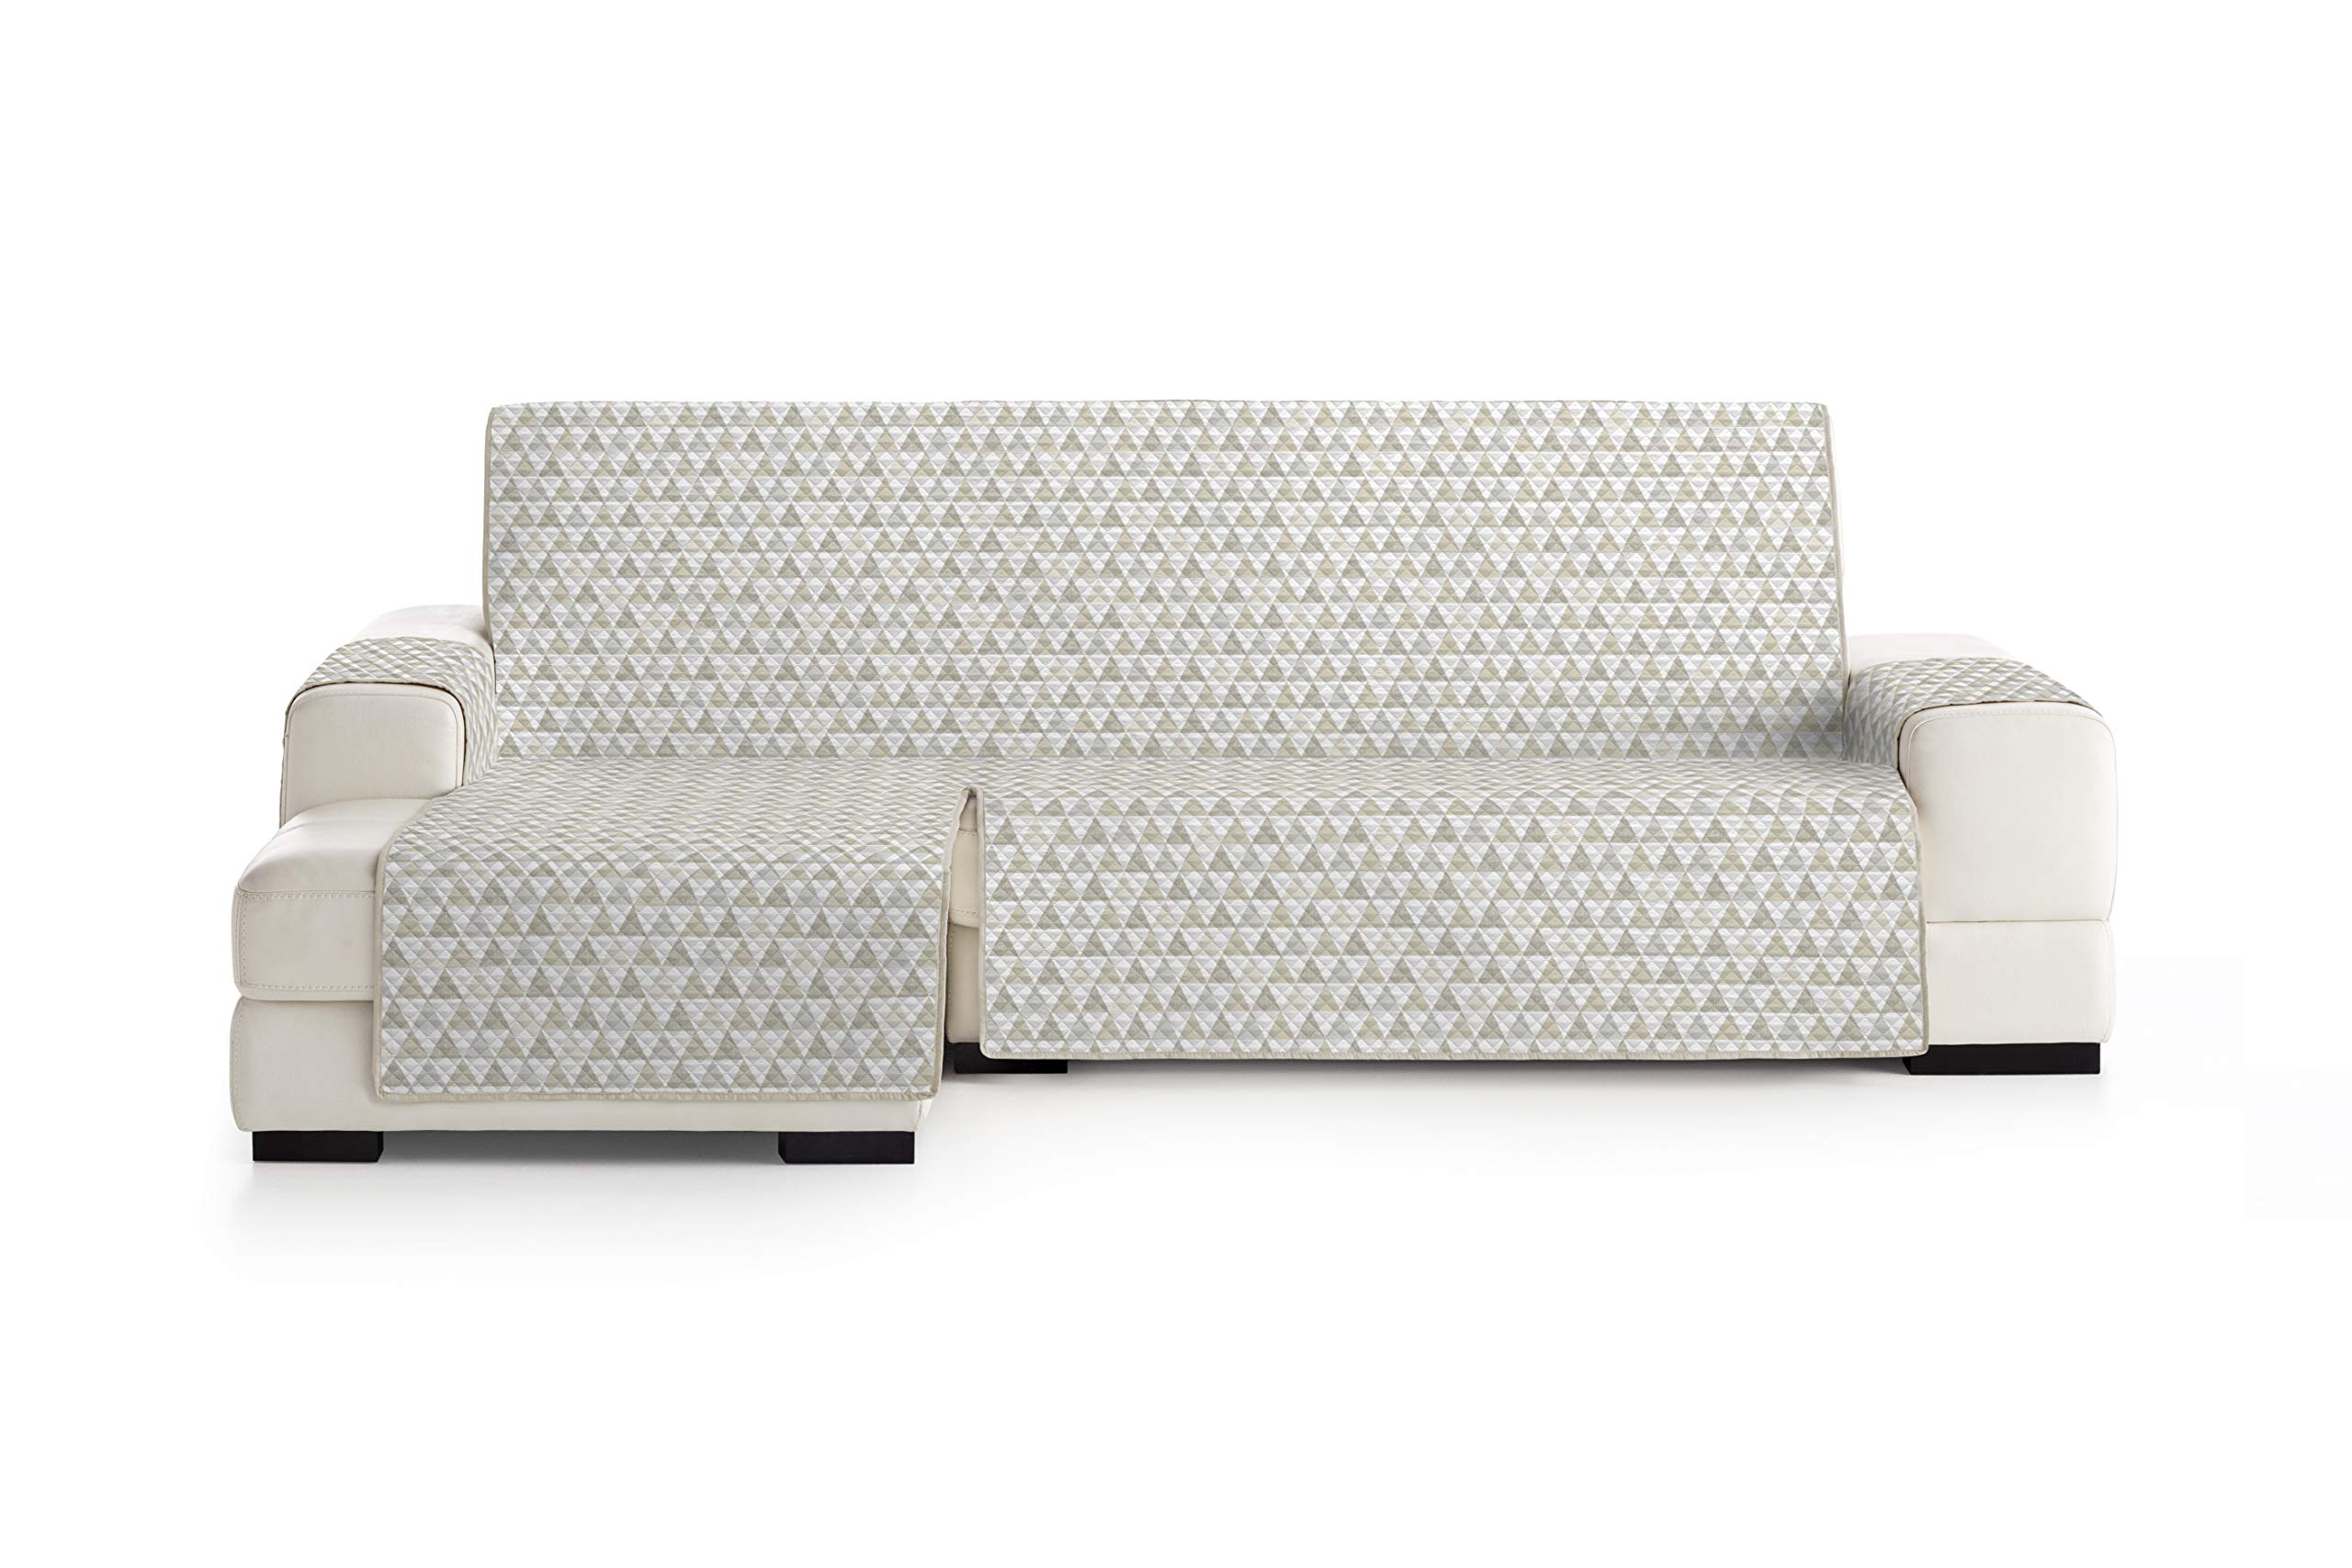 Eysa Nordic Sofa überwurf, Polyester, C/1 beige-beige, Chaise Longue 290 cm. Geeignet für Sofas von 300 bis 350 cm